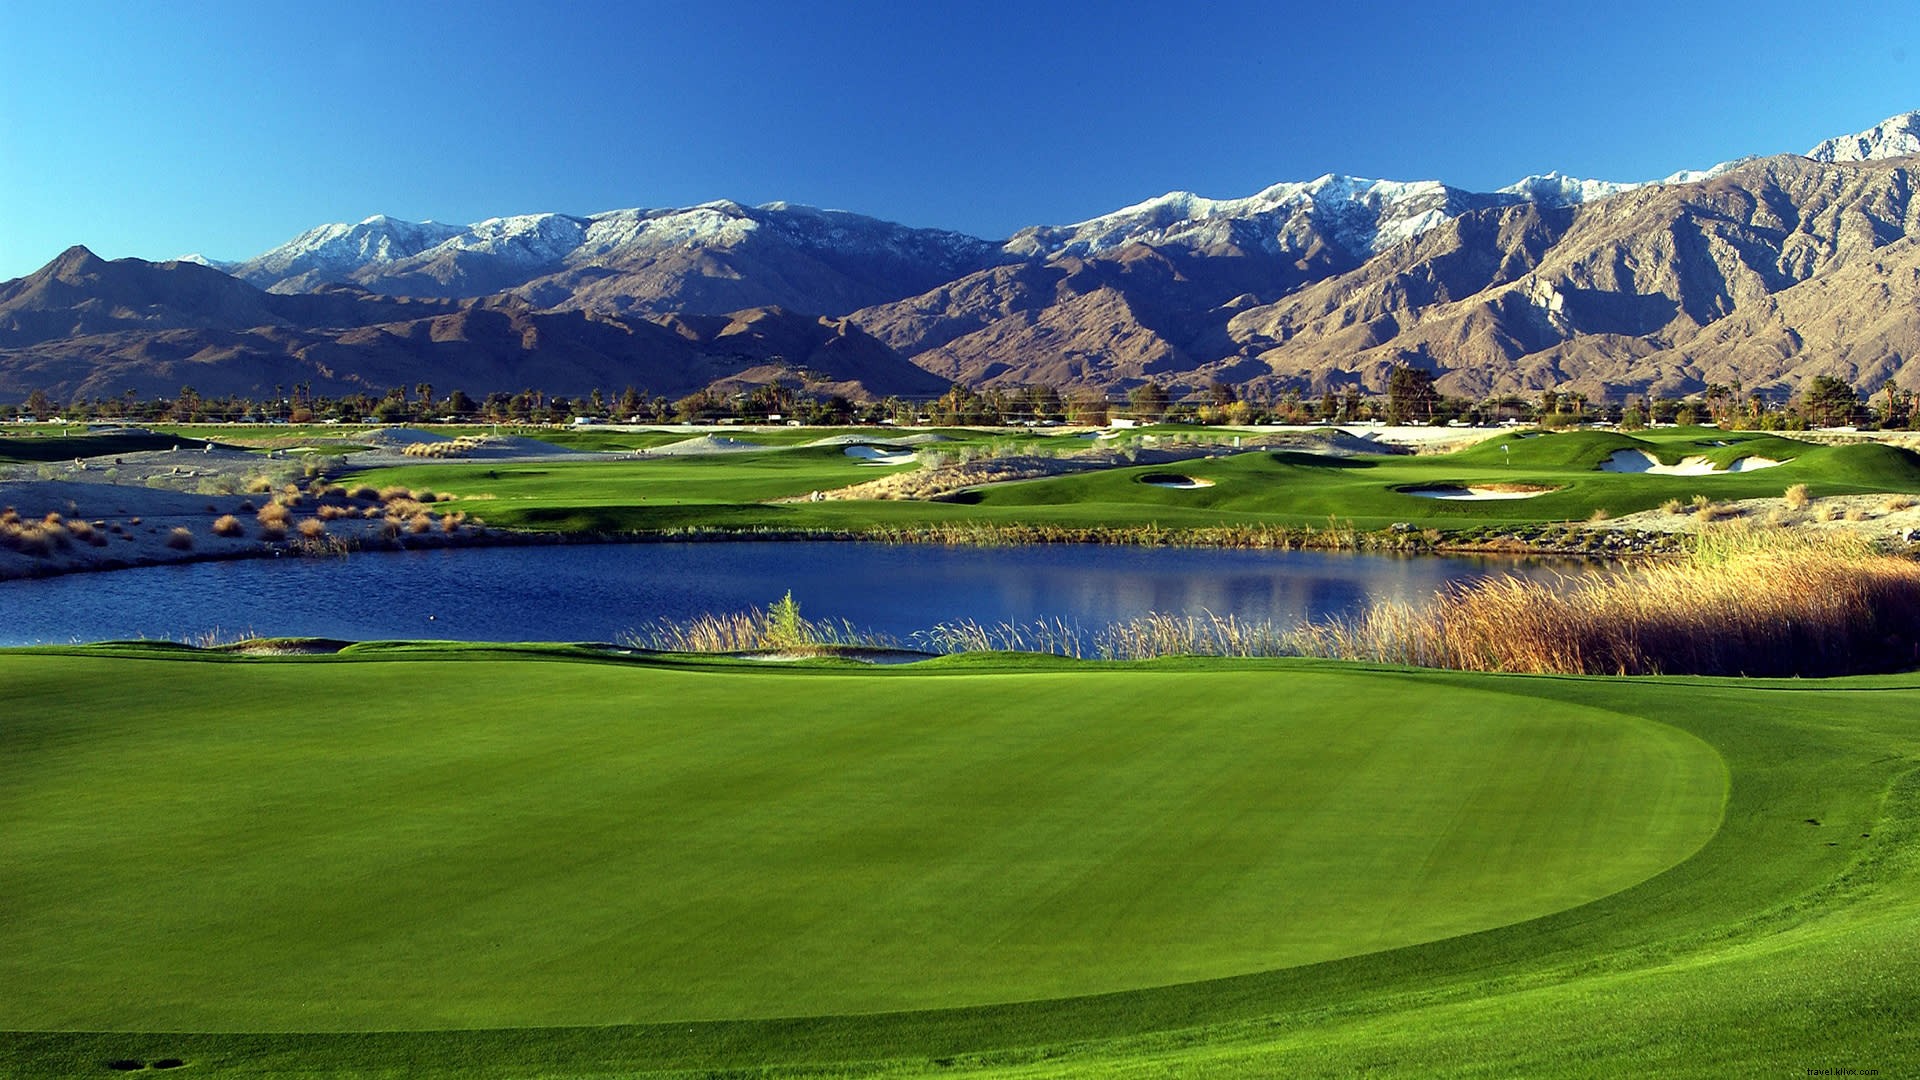 Lima Kursus Singkat untuk Golf Musim Panas di Greater Palm Springs 